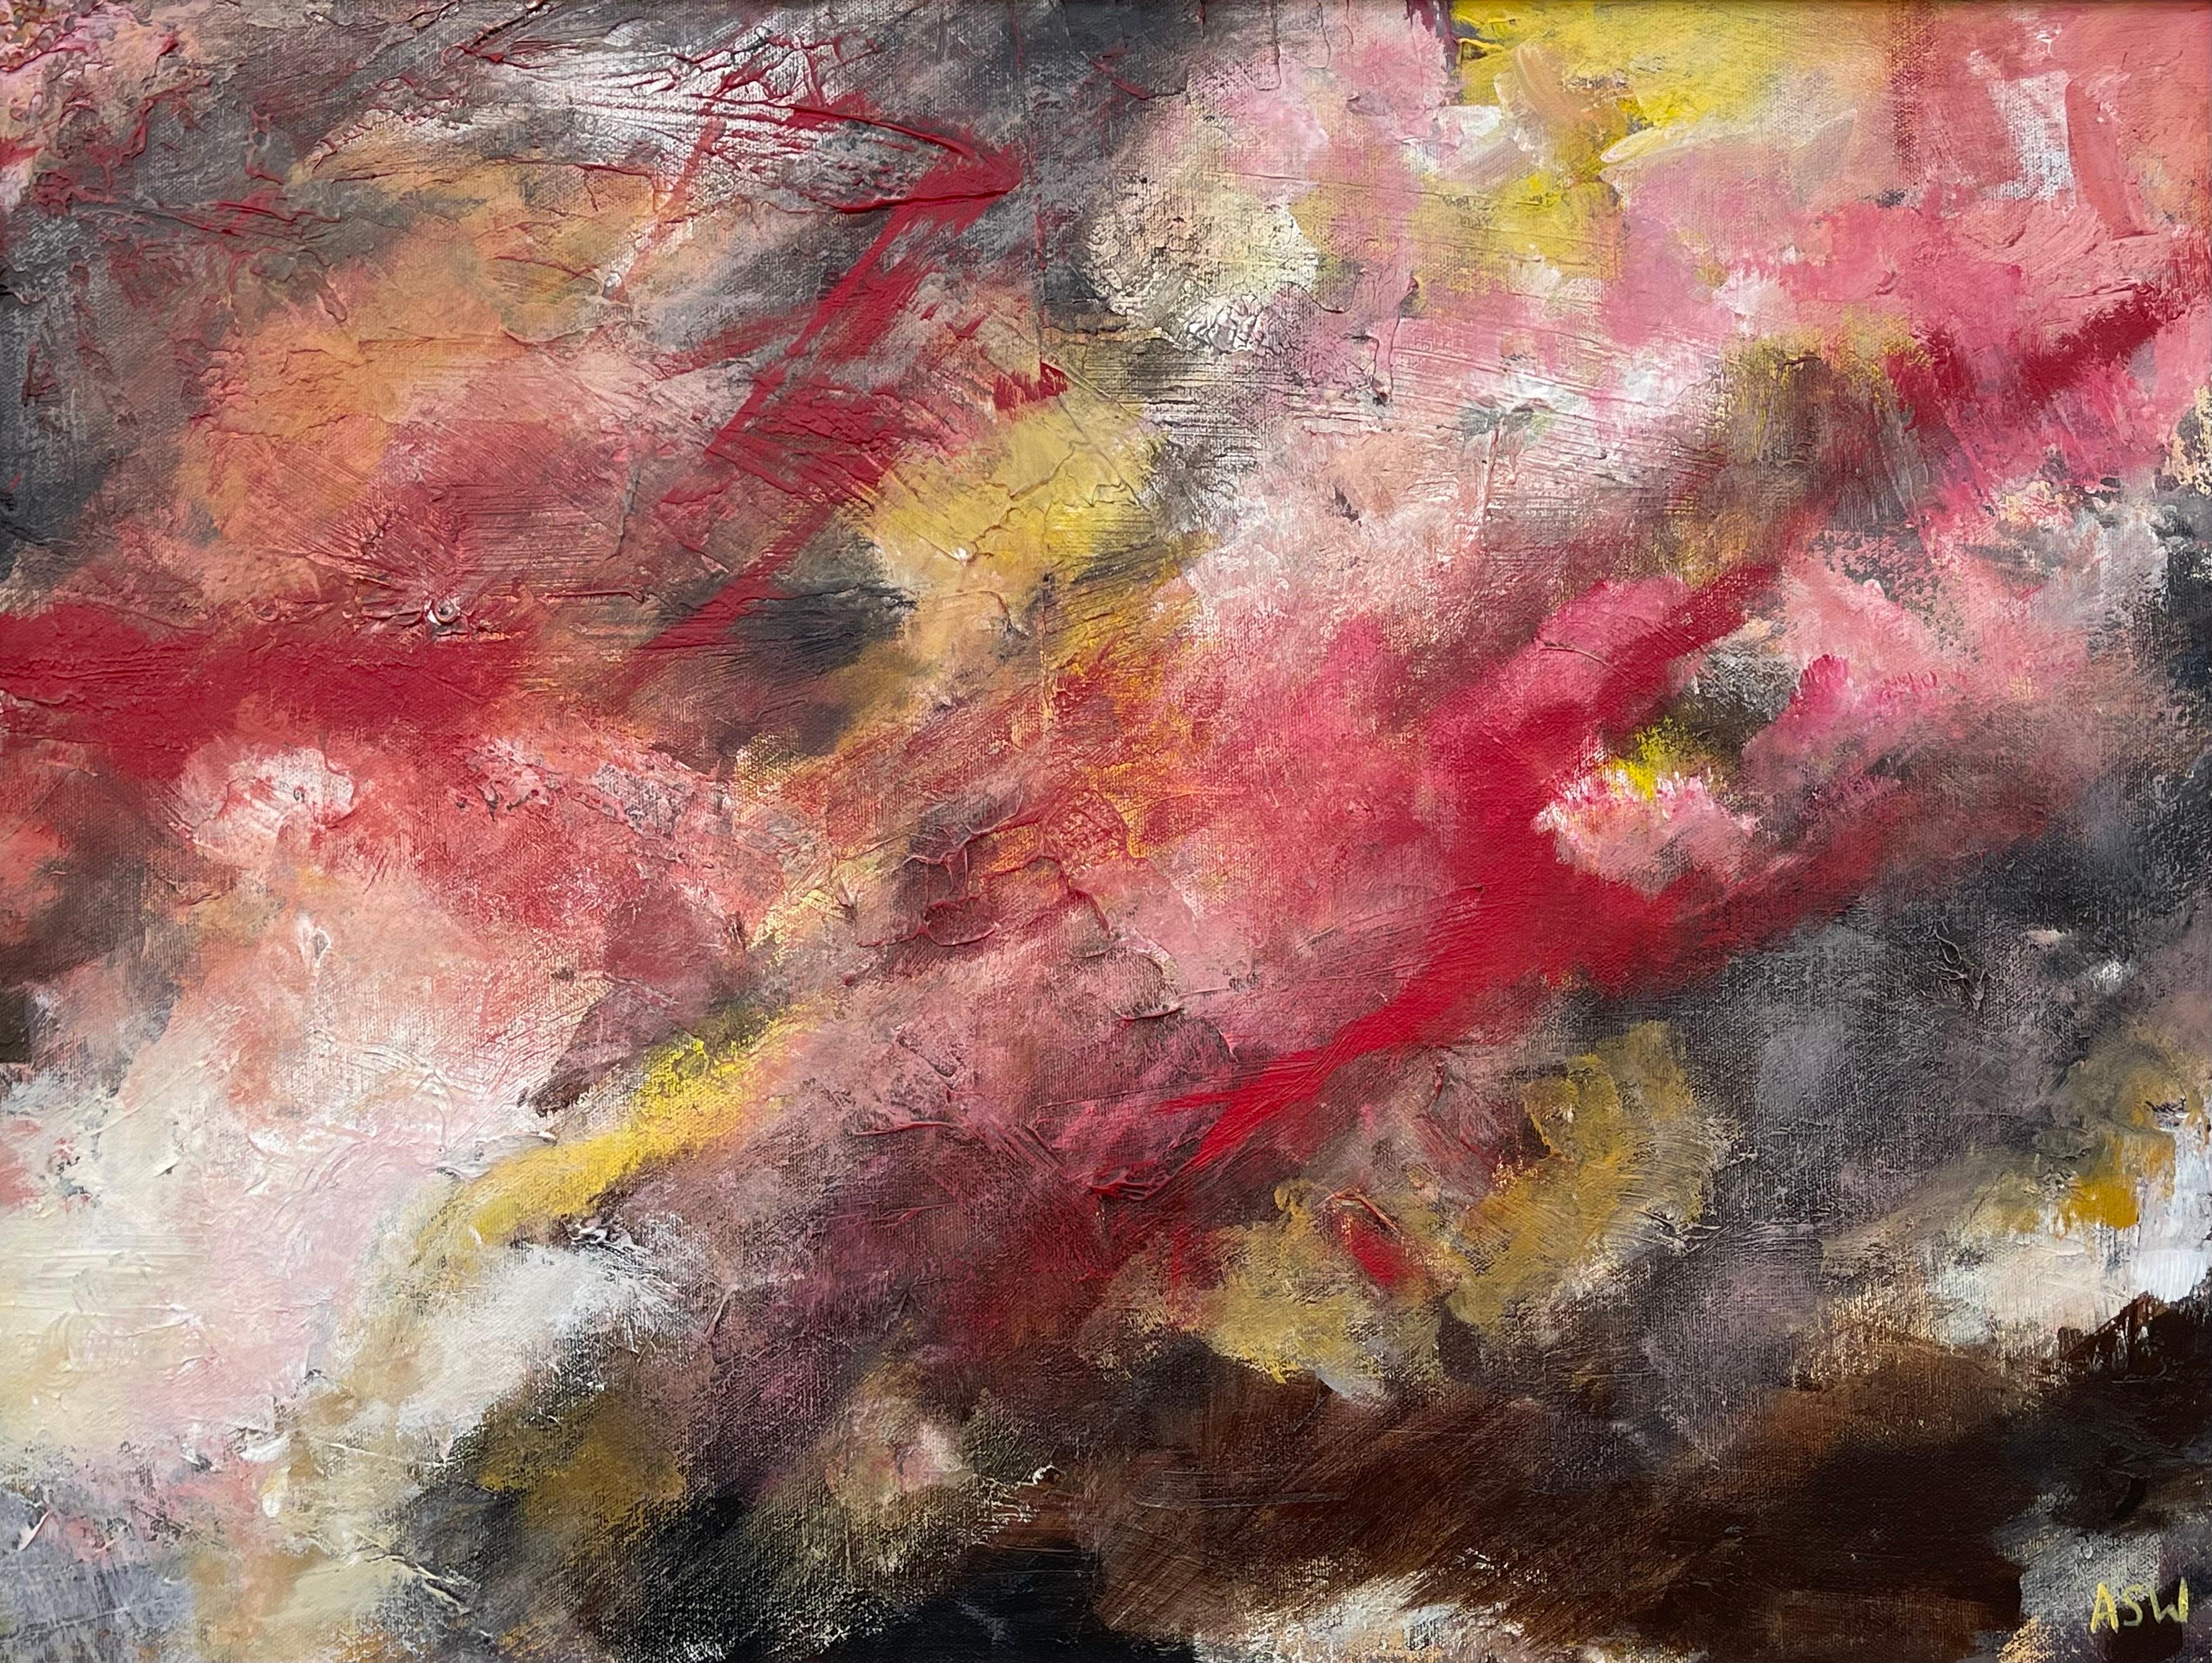 Paysage abstrait de l'artiste britannique contemporaine Angela Wakefield. Un original unique utilisant les couleurs rouge foncé, noir et jaune, faisant partie d'un nouveau corpus d'œuvres basées sur les émotions humaines. 

L'œuvre d'art mesure 24 x